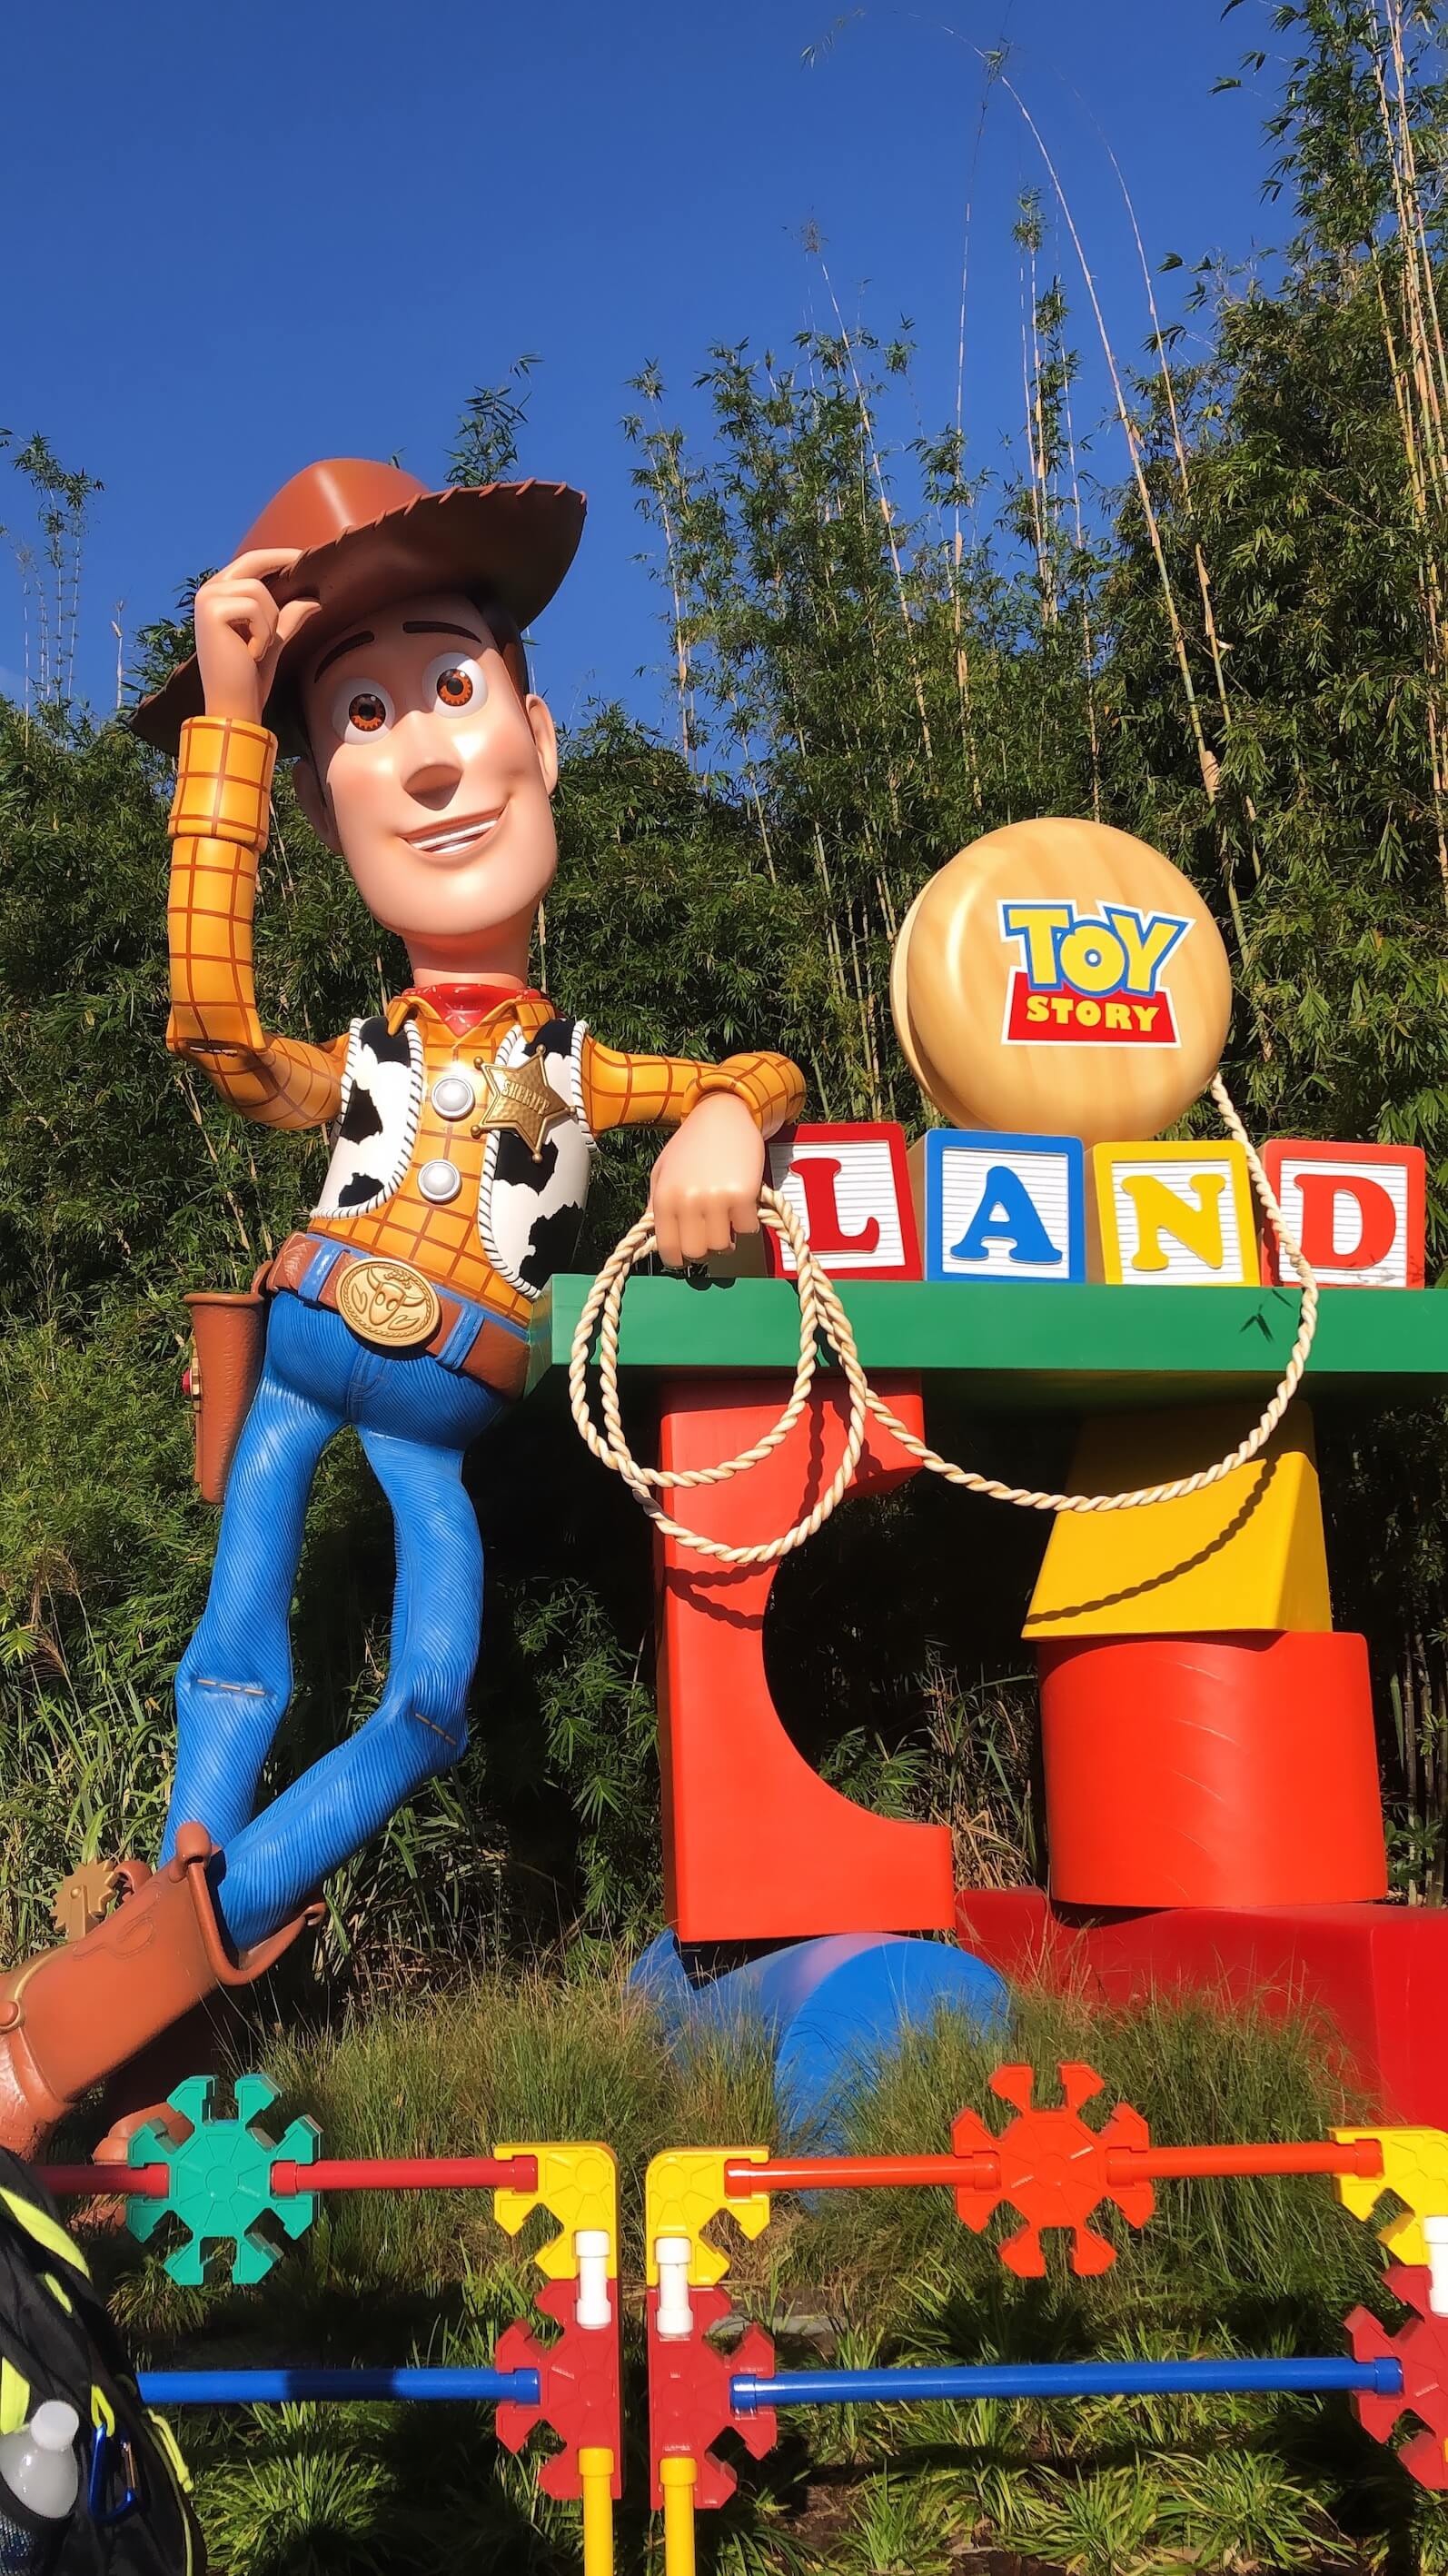 Entrada da Toy Story Land